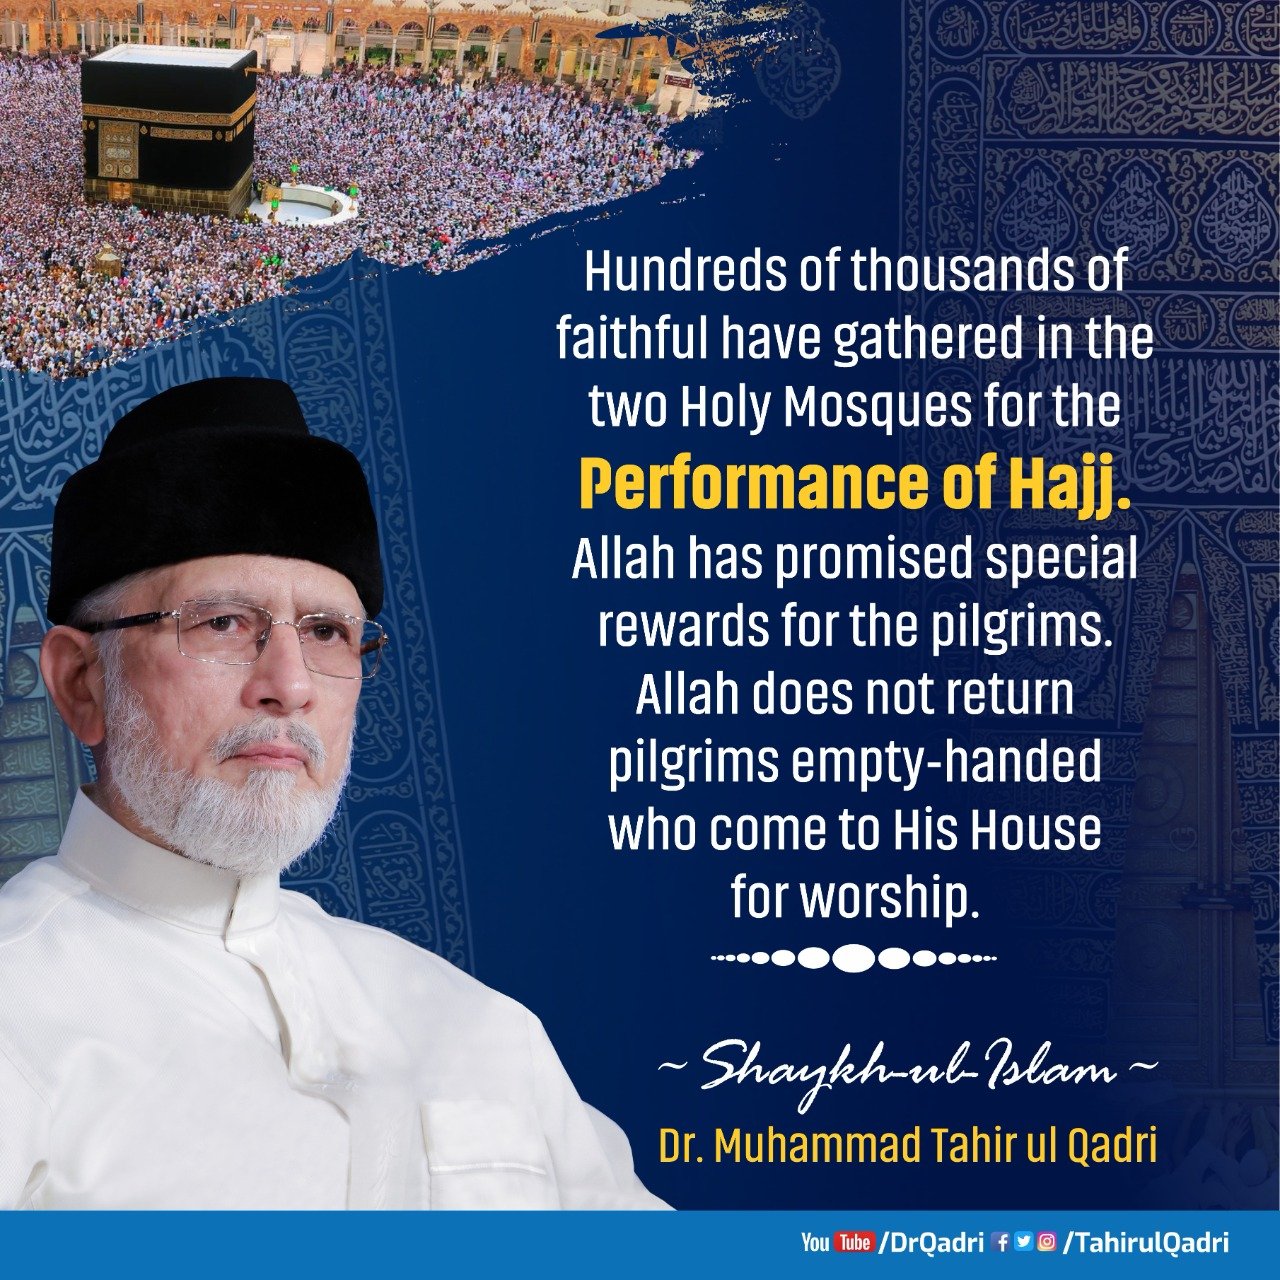 Hajj symbolizes unity and oneness of Muslims: Shaykh-ul-Islam Dr Muhammad Tahir-ul-Qadri